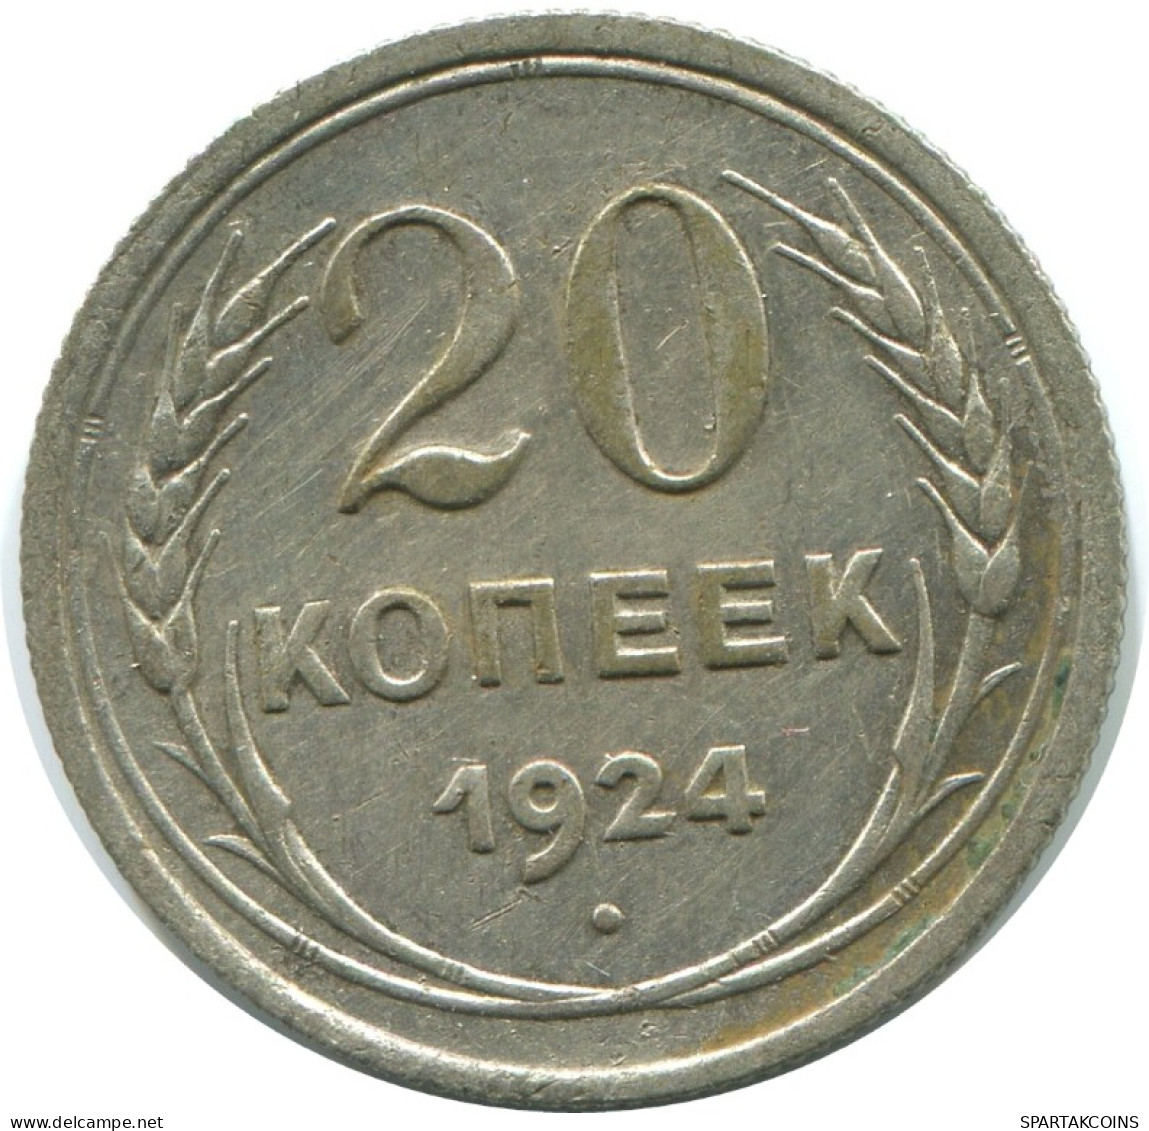 20 KOPEKS 1924 RUSSLAND RUSSIA USSR SILBER Münze HIGH GRADE #AF295.4.D.A - Russland